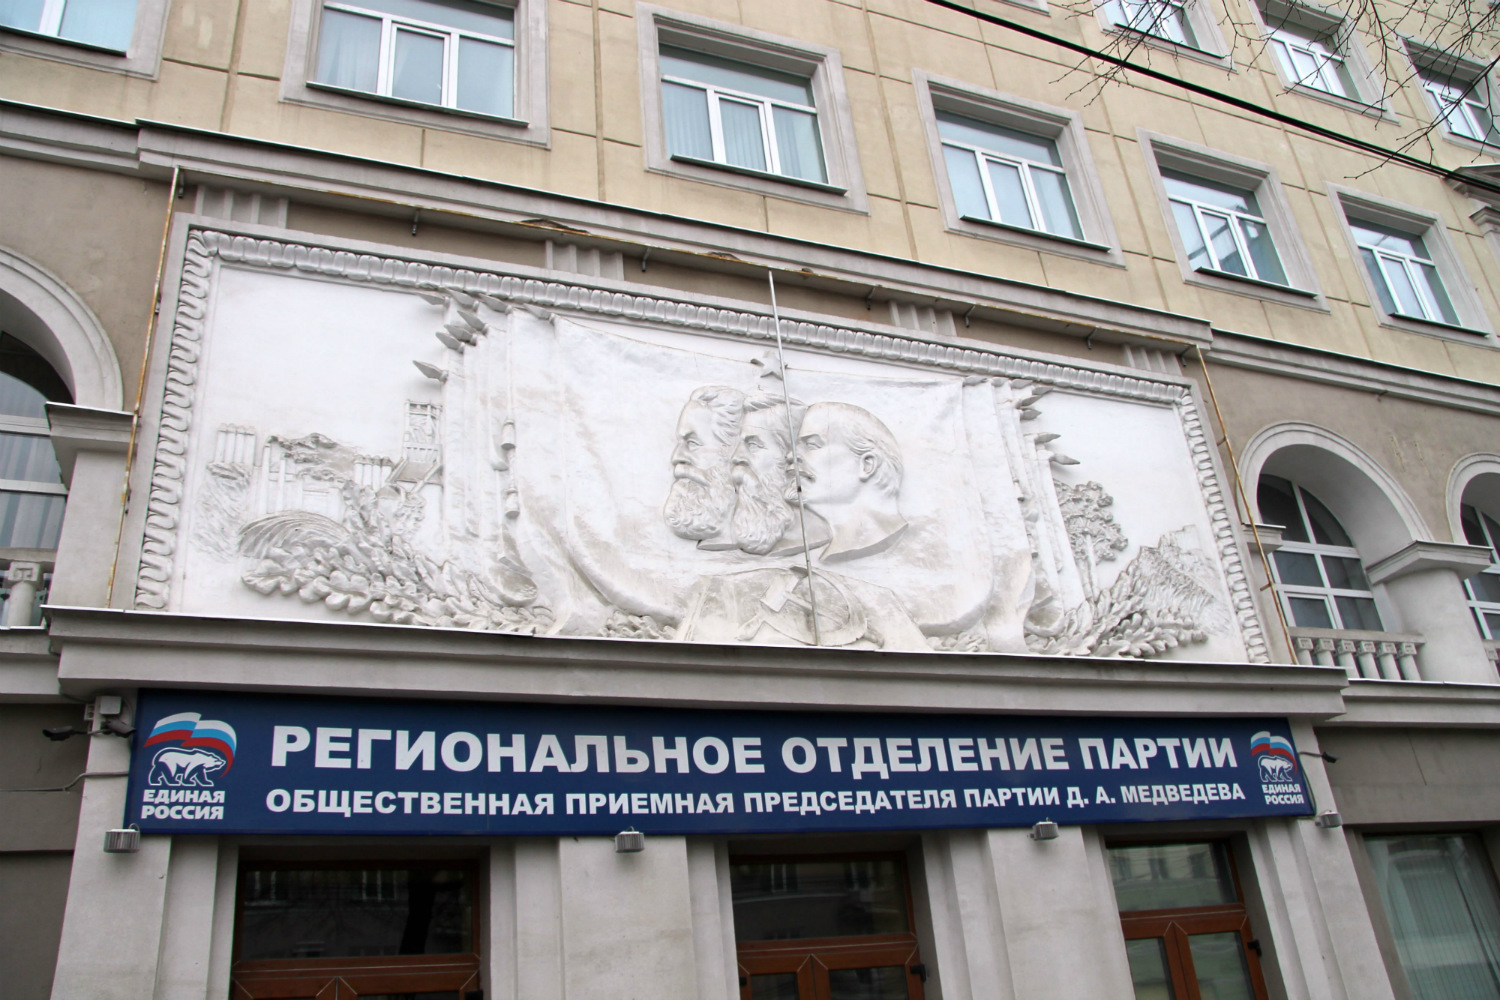 Voronezh, Проспект Революции, 33. Монументальное искусство (мозаики, росписи). Monumental art (mosaics, murals) Voronezh Region